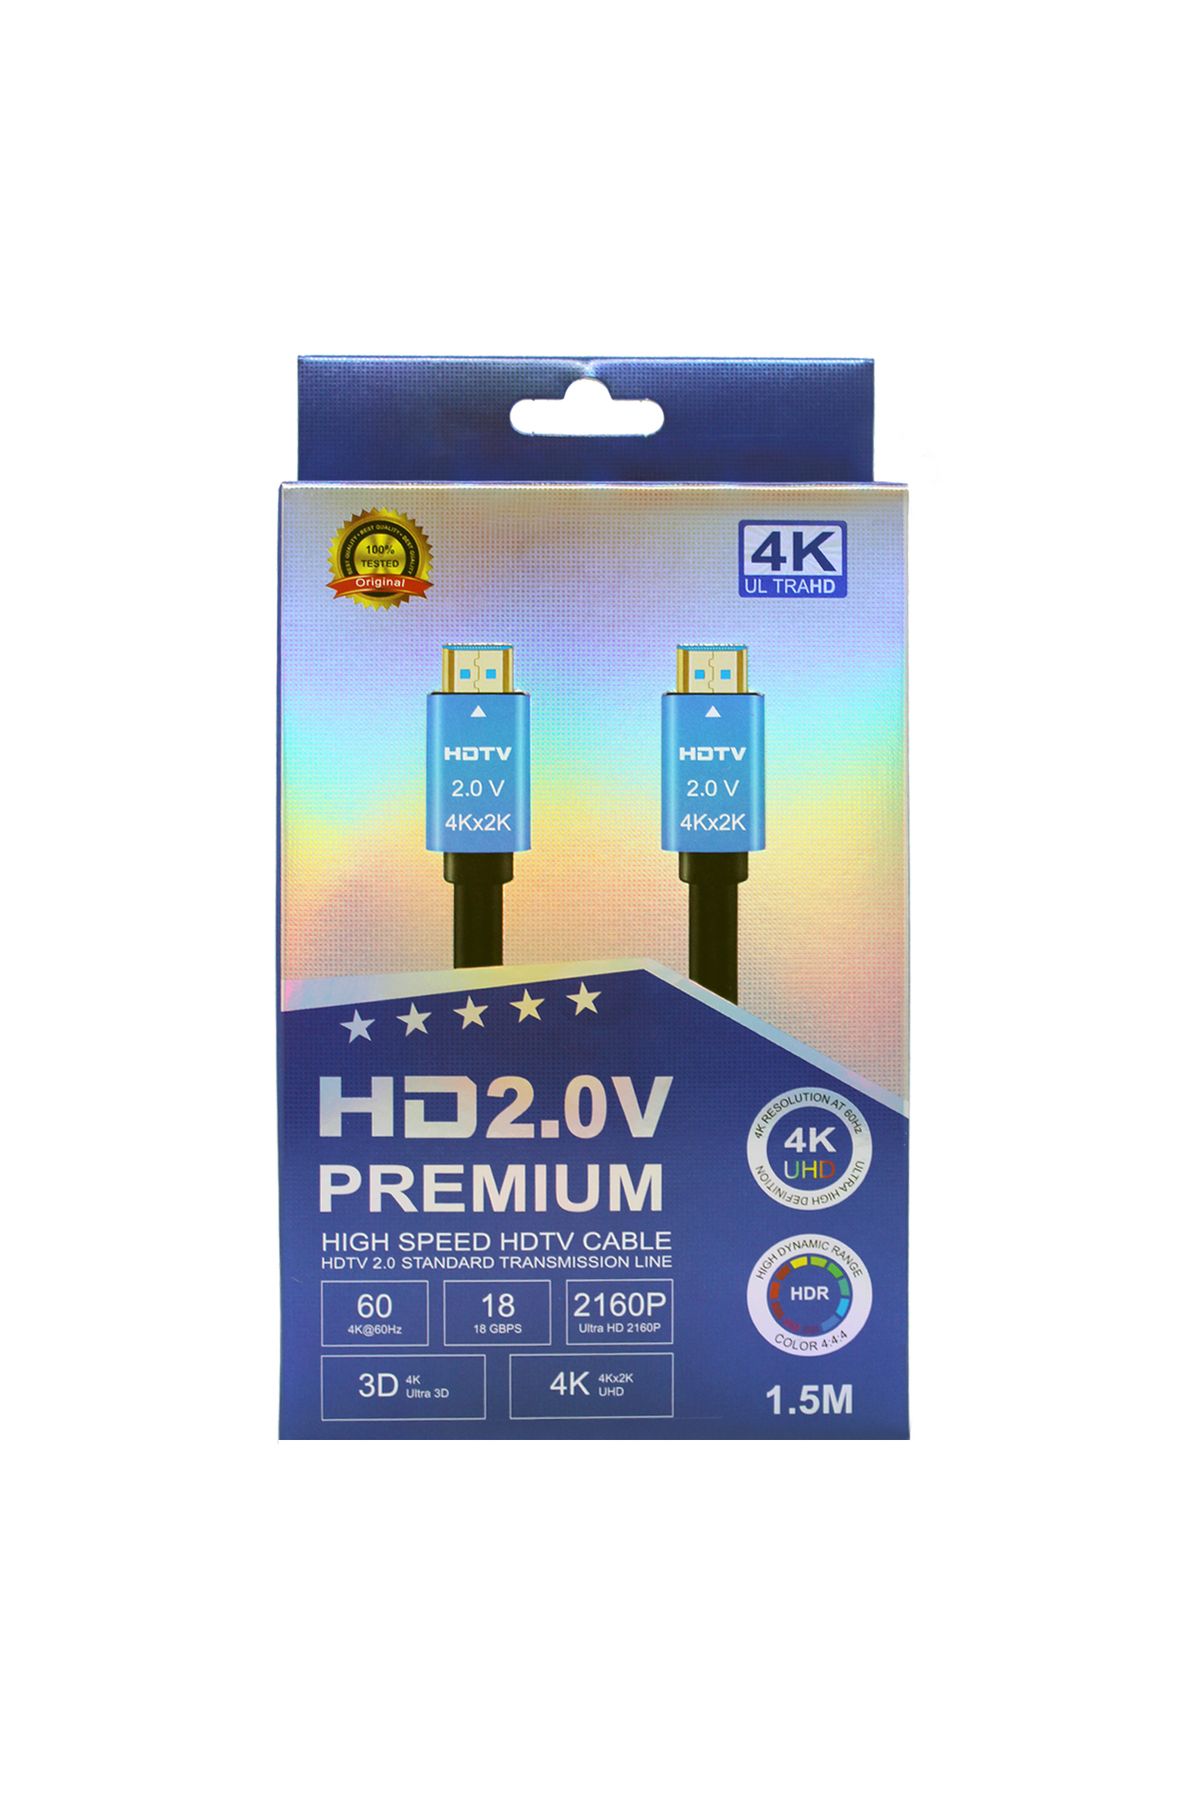 Rastpage HDTV Premium Yüksek hızlı 4K Ultra HD HDMI 2.0 Ses ve Görüntü Kablosu 1.5 Metre